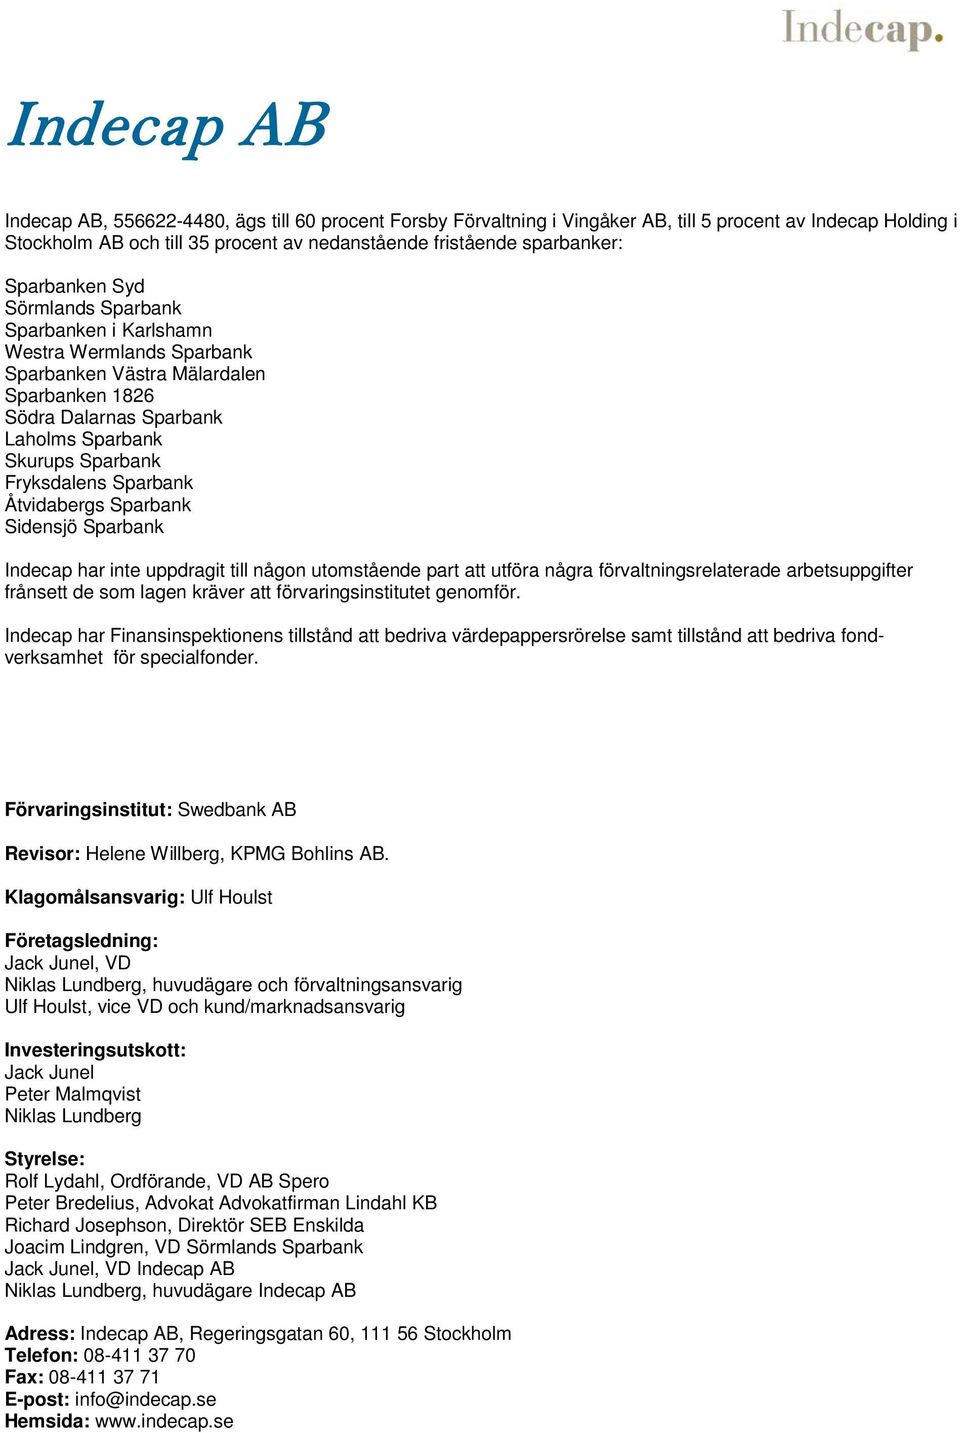 Sparbank Åtvidabergs Sparbank Sidensjö Sparbank Indecap har inte uppdragit till någon utomstående part att utföra några förvaltningsrelaterade arbetsuppgifter frånsett de som lagen kräver att